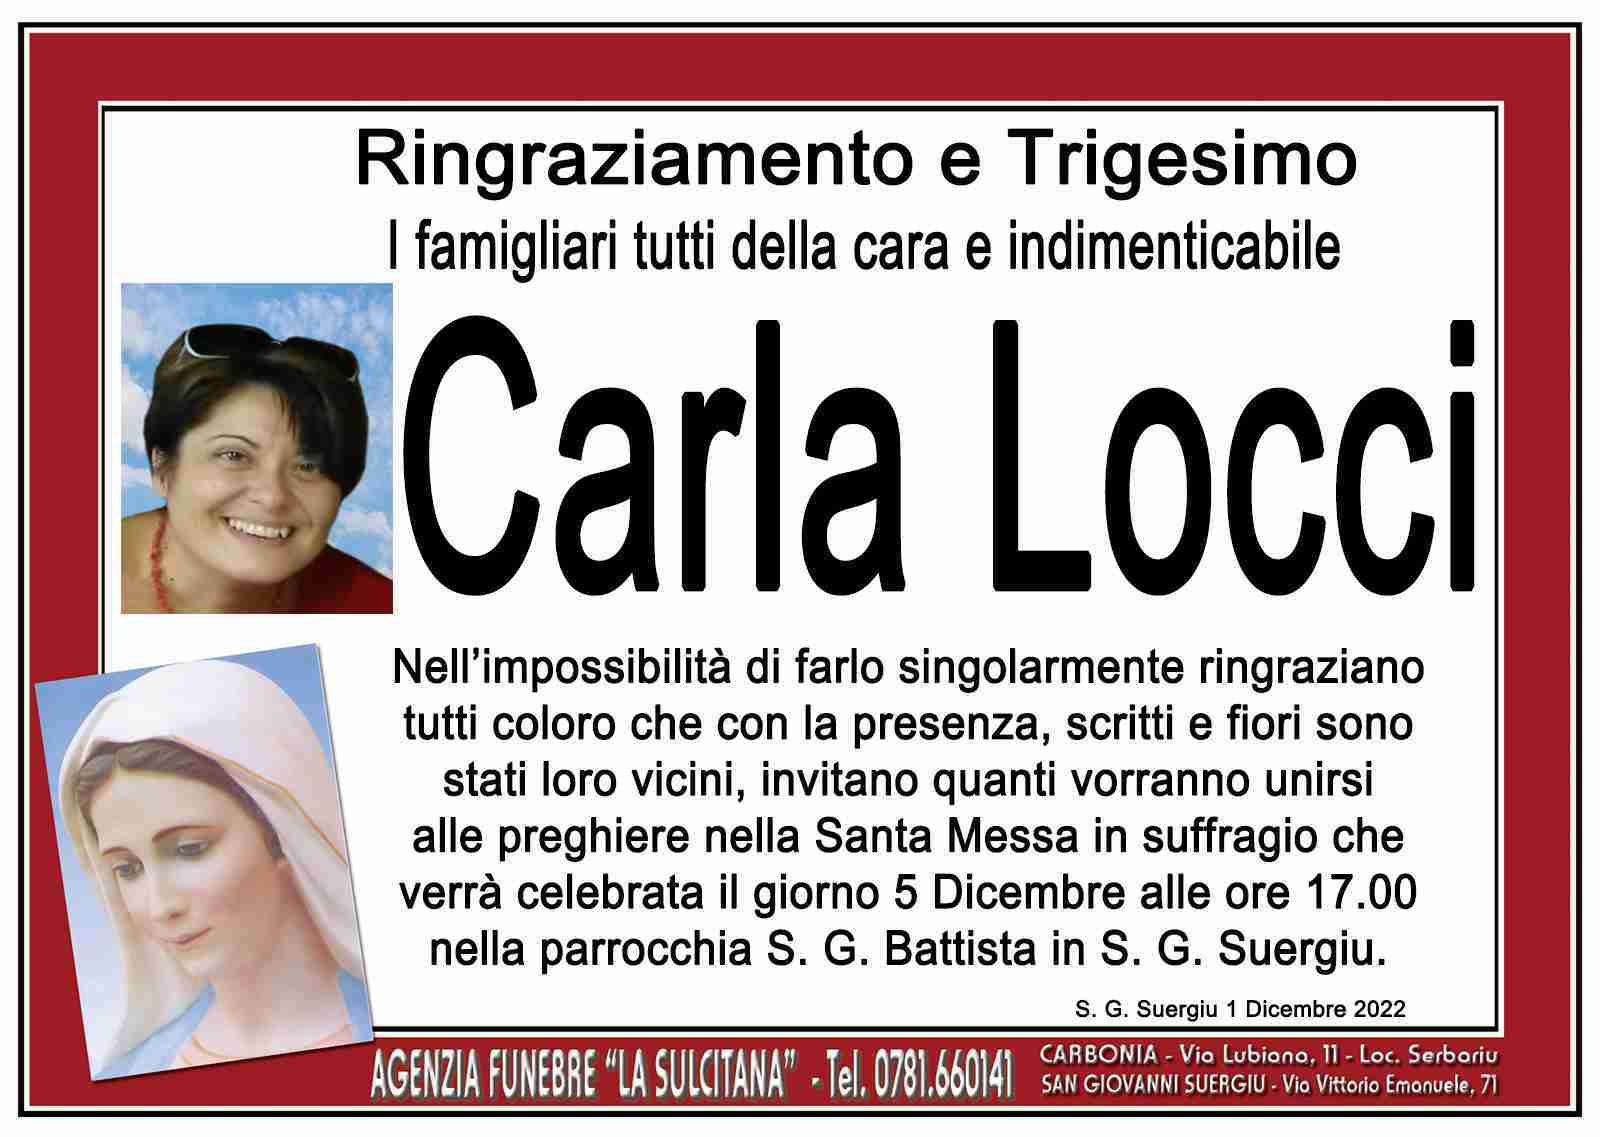 Carla Locci